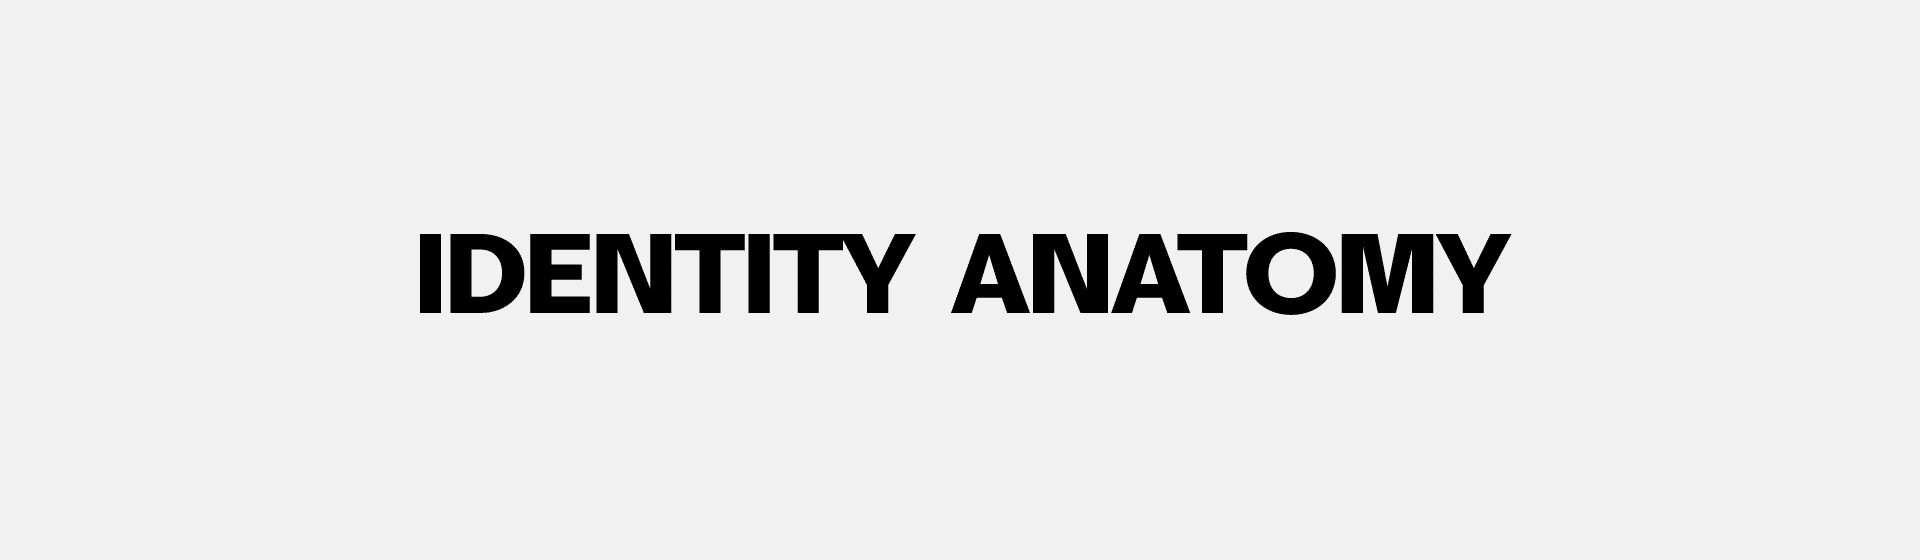 identity-anatomy2